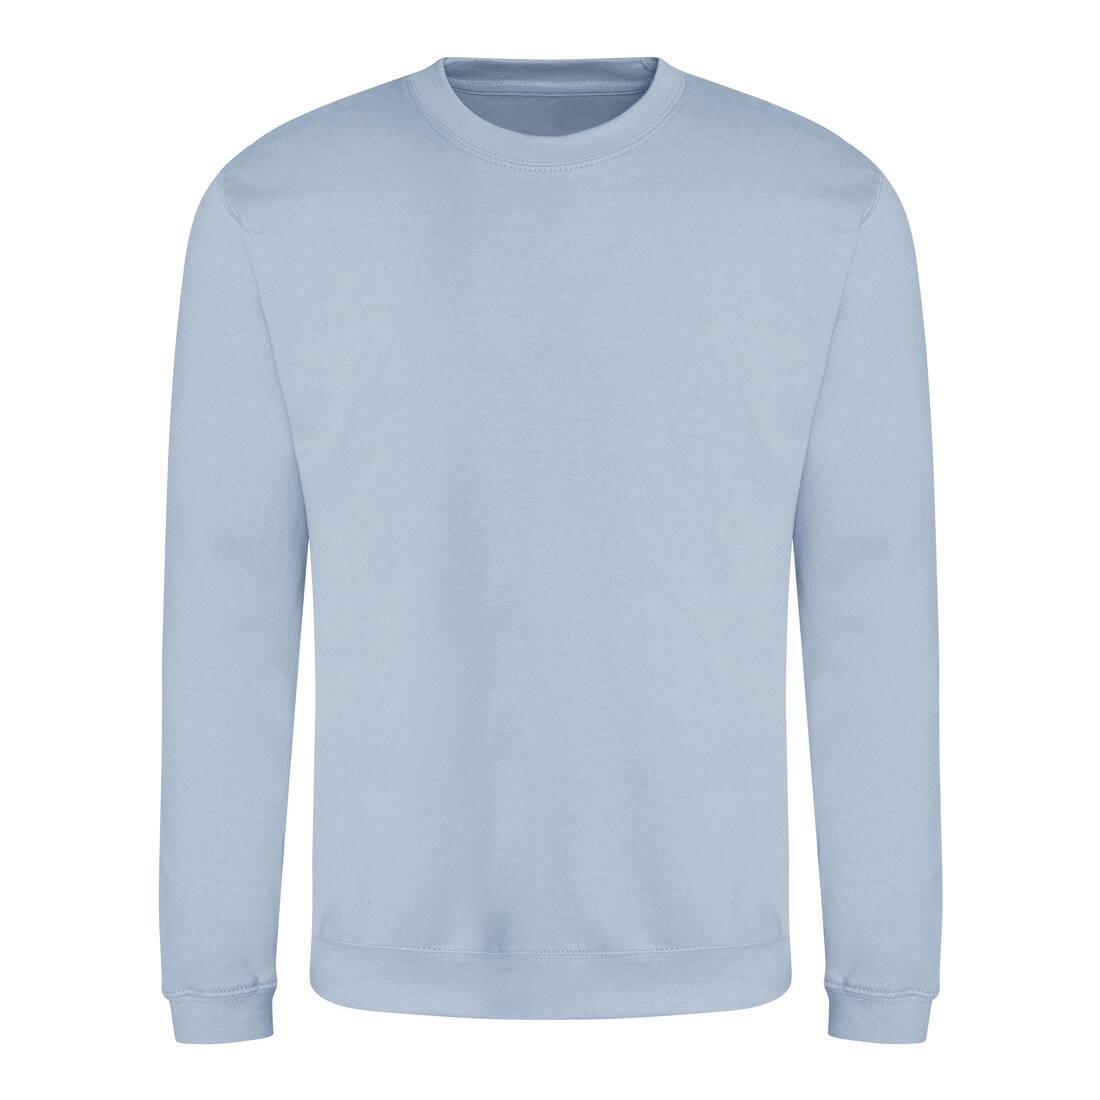 Sweater voor heren hemelsblauw Just Hoods te personaliseren